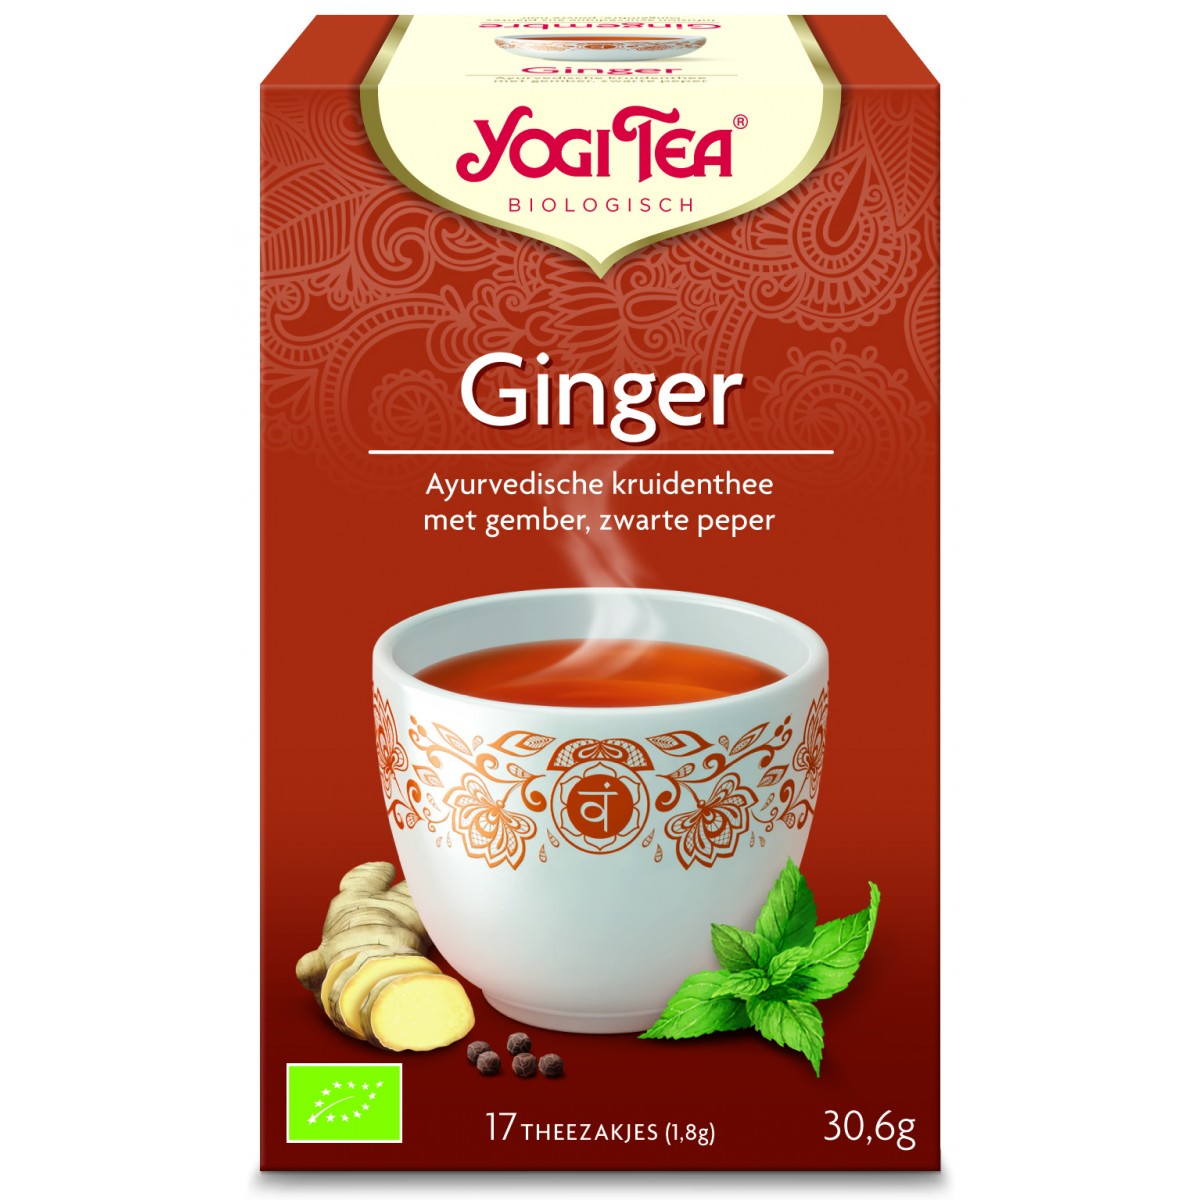 Ik heb een Engelse les impliciet waarom niet Yogi Tea Ginger | Bestel glutenvrije producten van Yogi Tea online bij  Glutenvrije Webshop